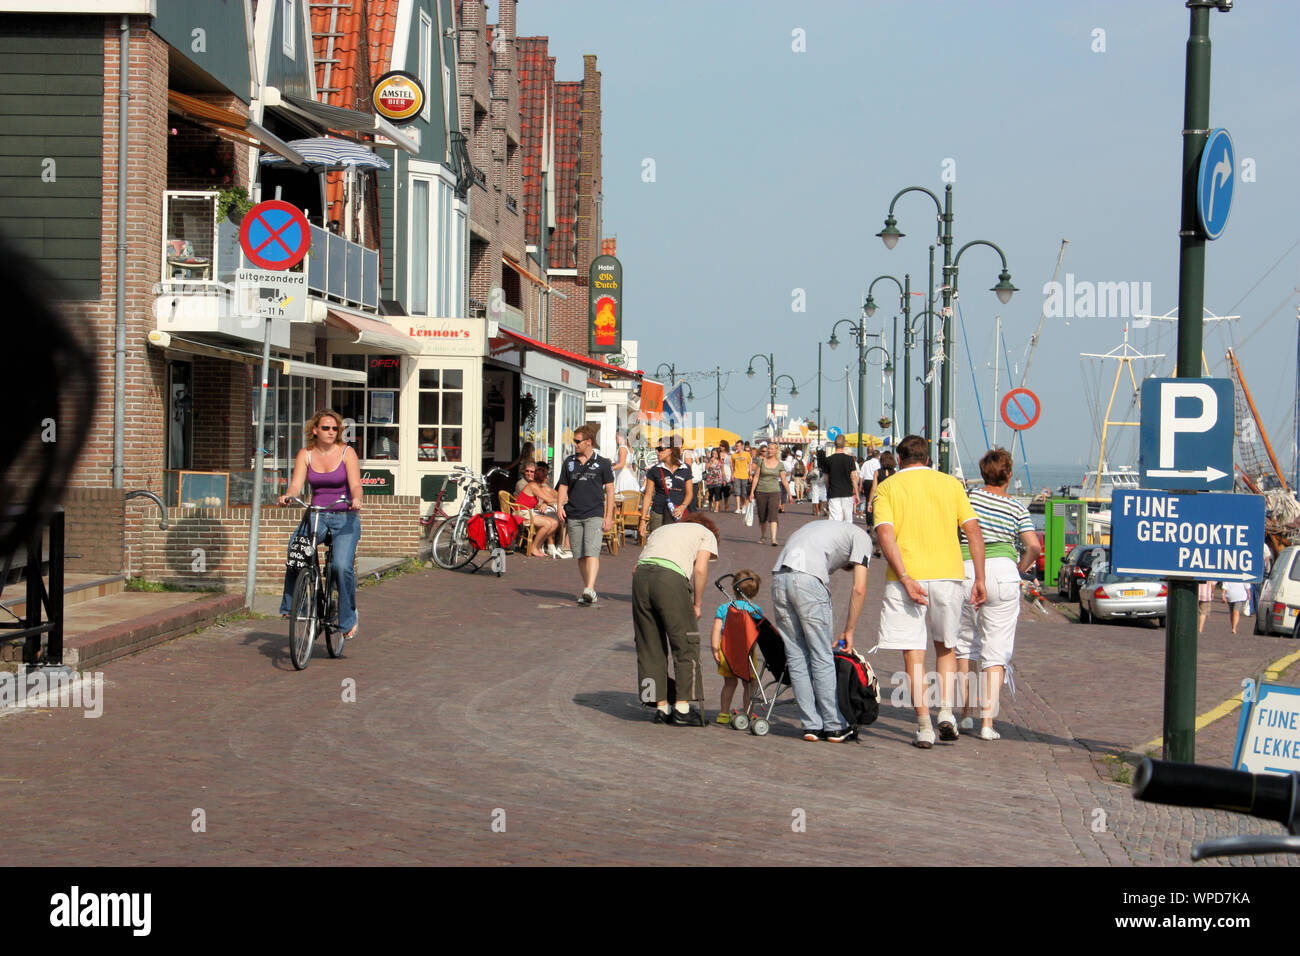 Eine Straße in Volendam Village, die gut mit den traditionellen Holzhäusern, Restaurants, Souvenirläden und Fotostudios erhalten. Stockfoto